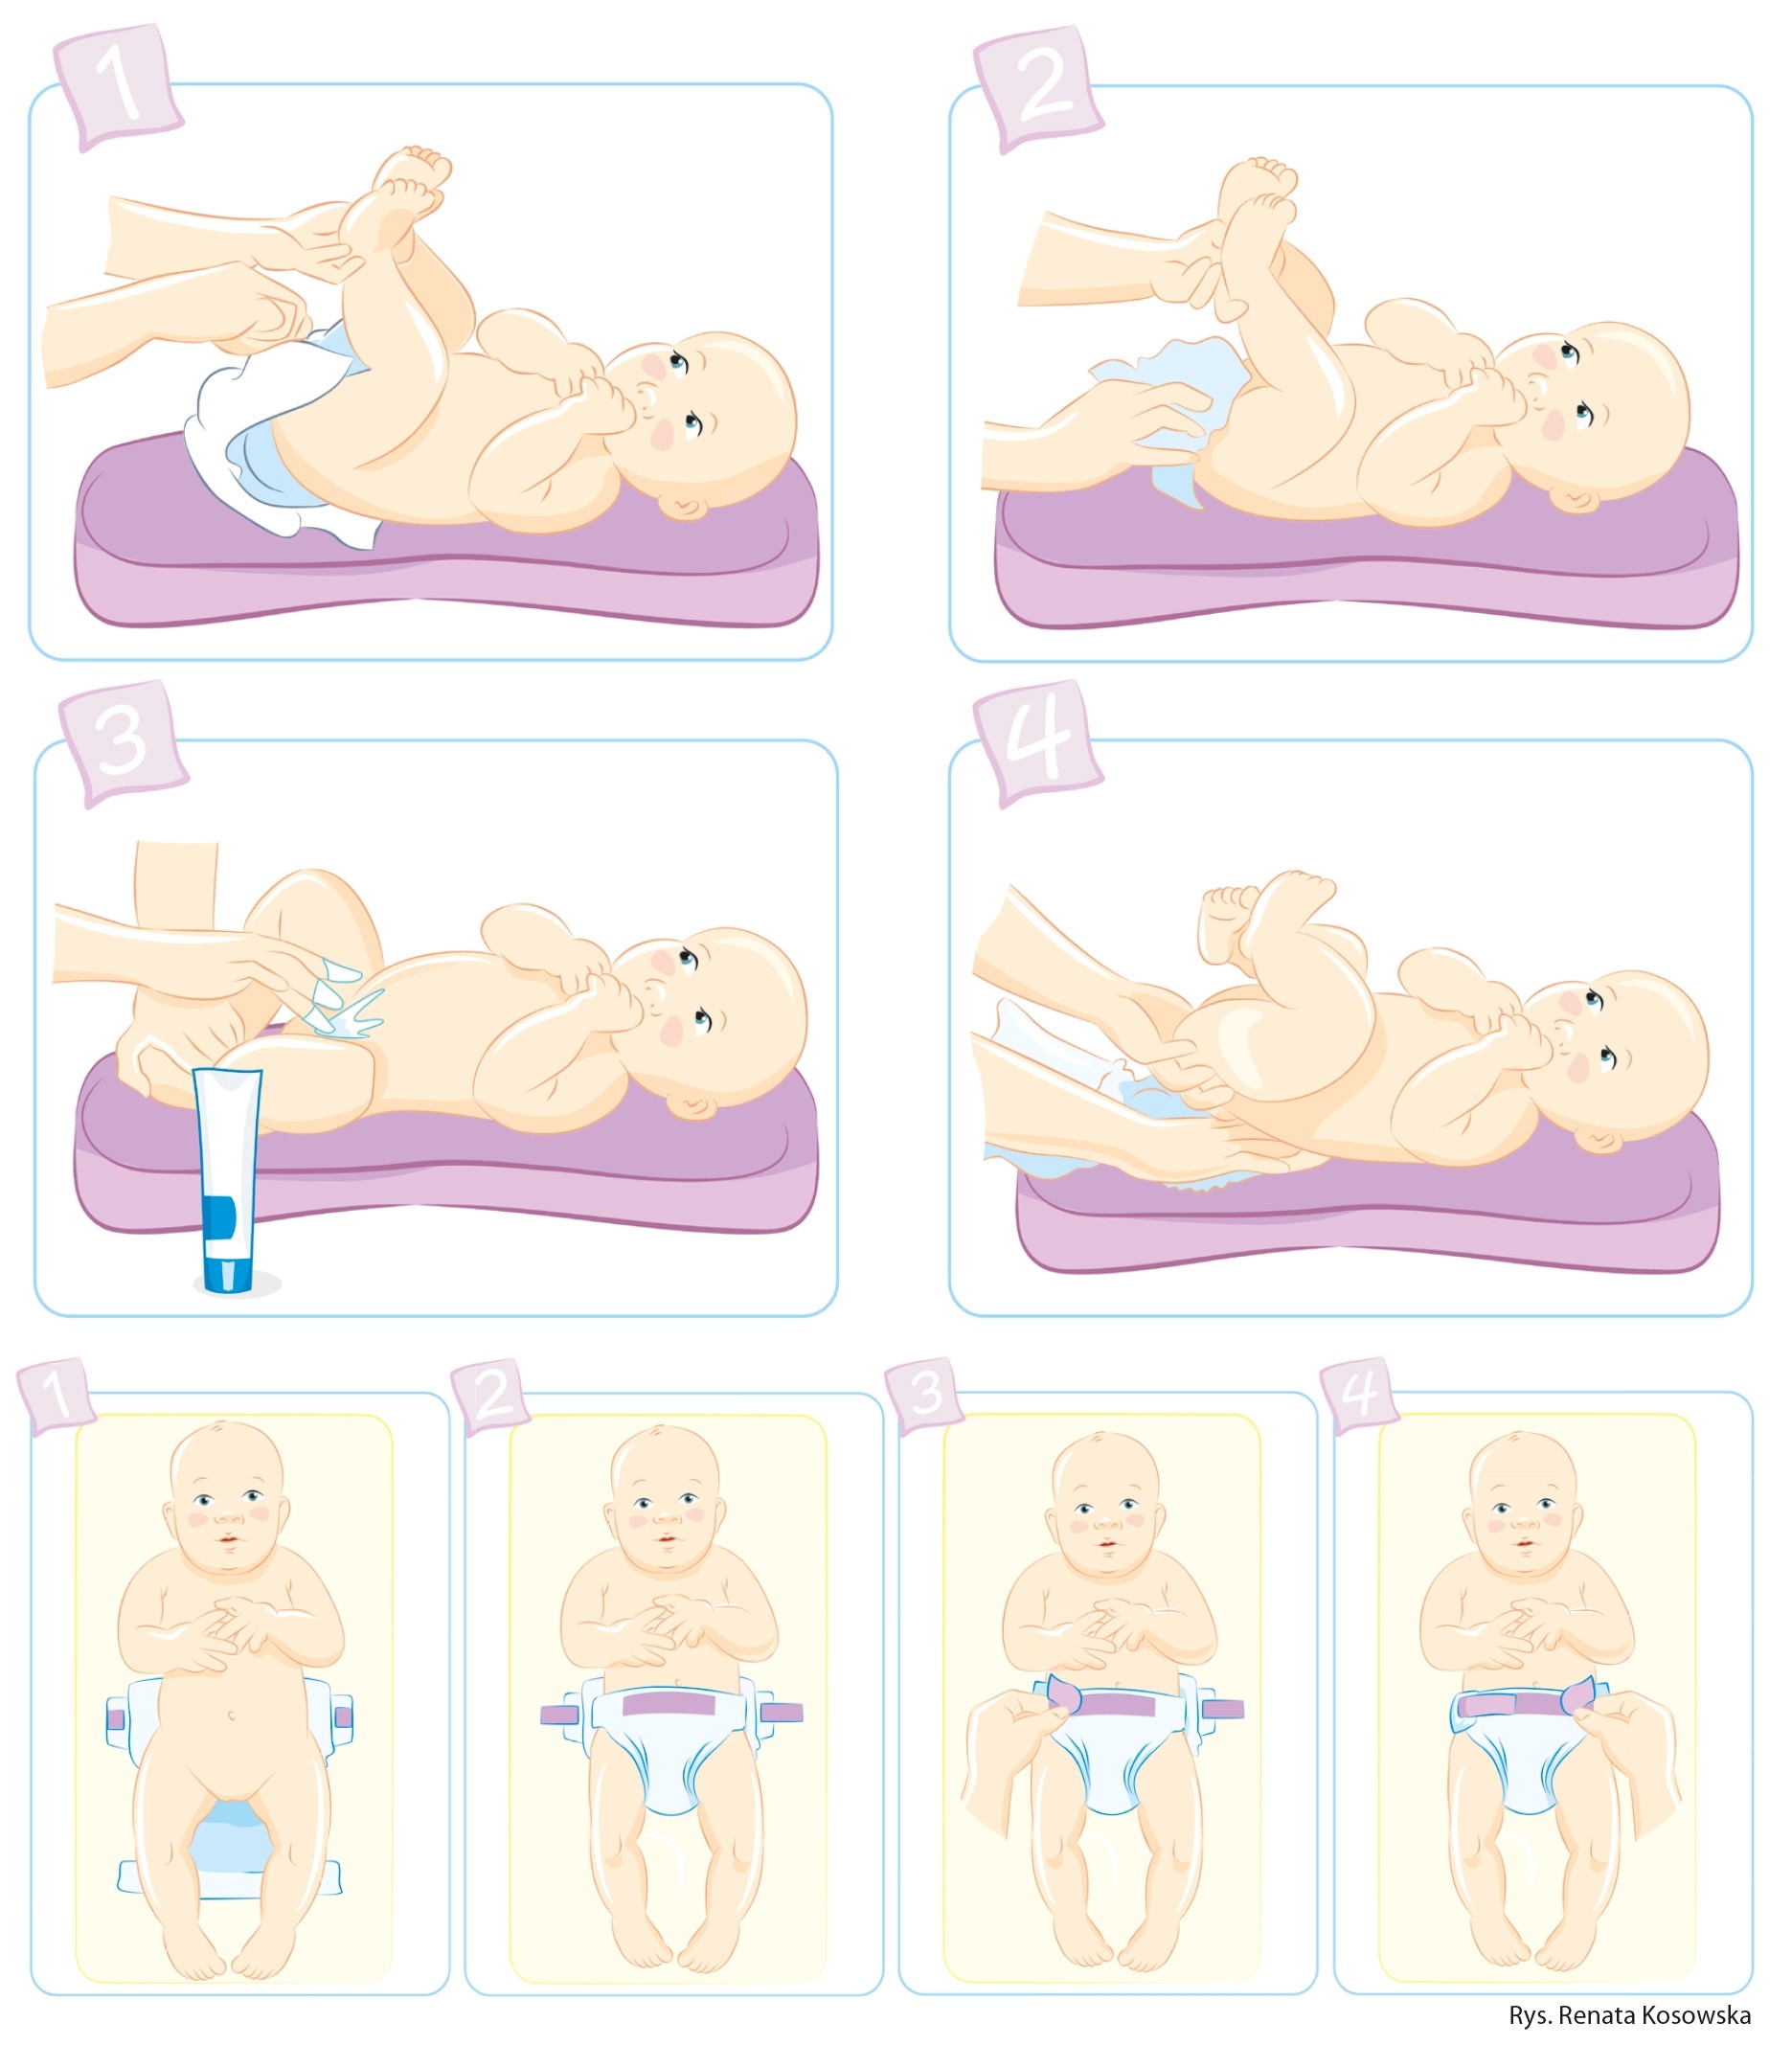 instruktaz zakładanie pieluchy noworodkowi